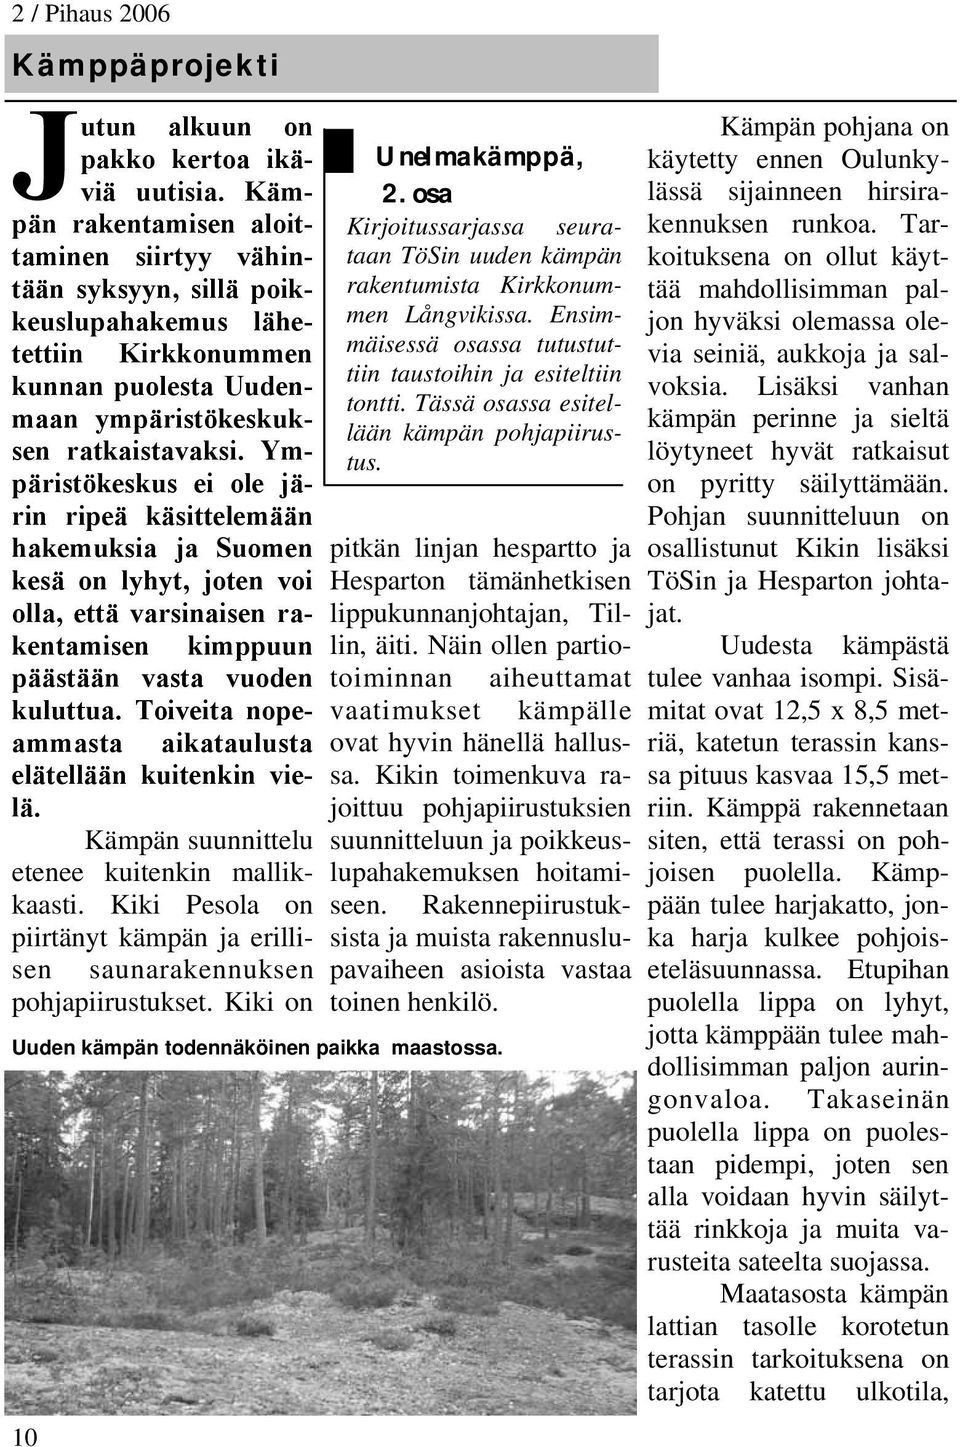 Ympäristökeskus ei ole järin ripeä käsittelemään hakemuksia ja Suomen kesä on lyhyt, joten voi olla, että varsinaisen rakentamisen kimppuun päästään vasta vuoden kuluttua.